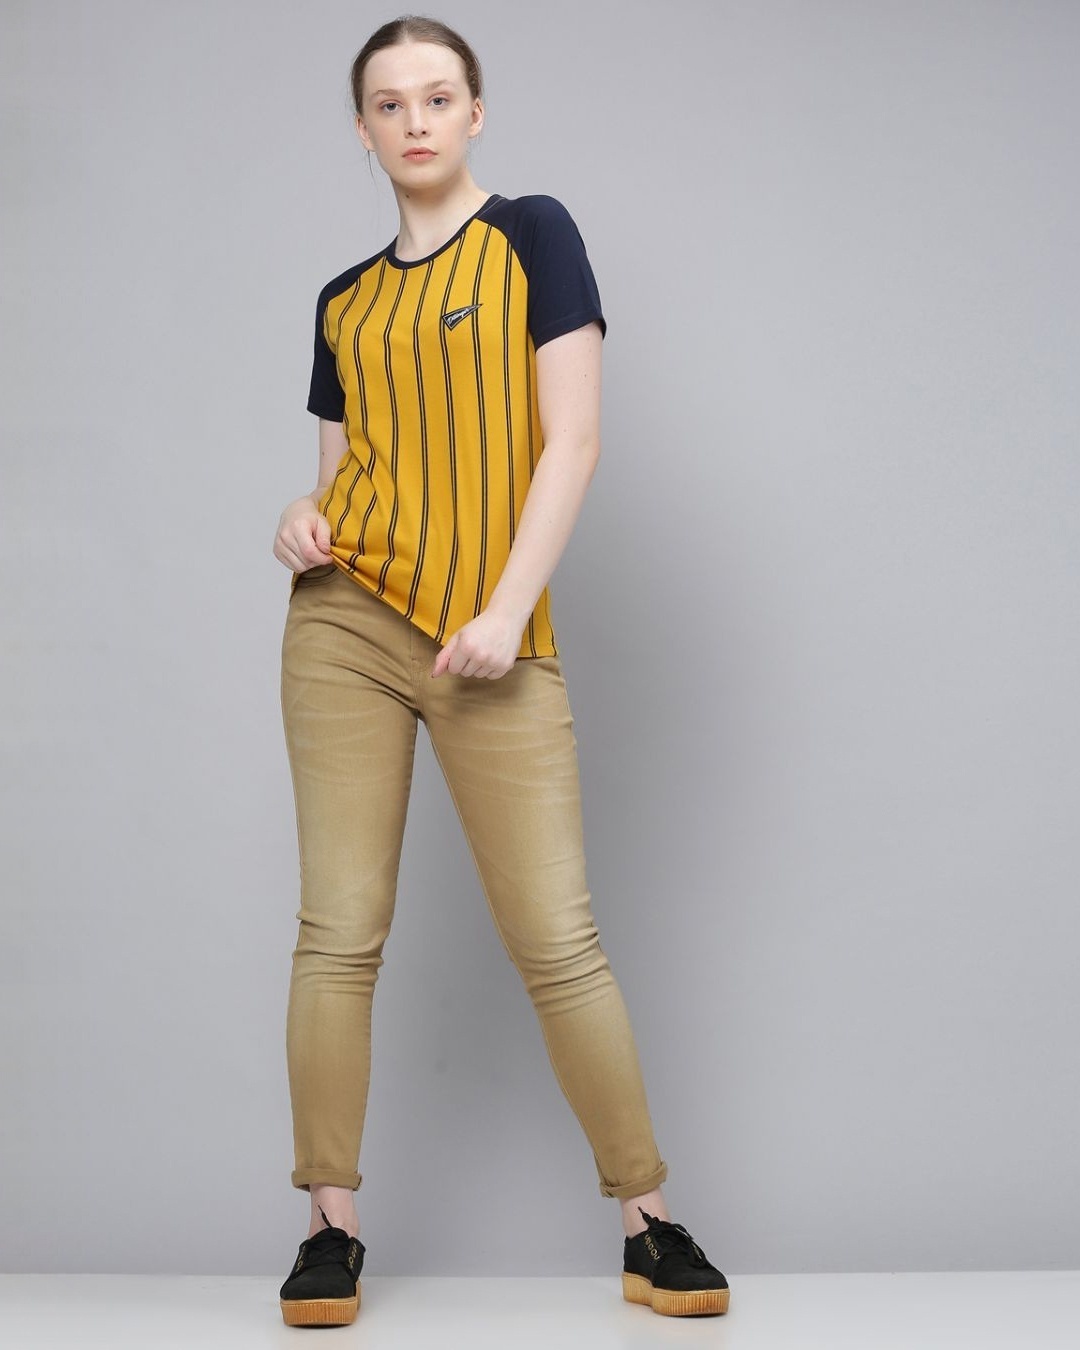 Shop Women's Yellow Striped T-shirt